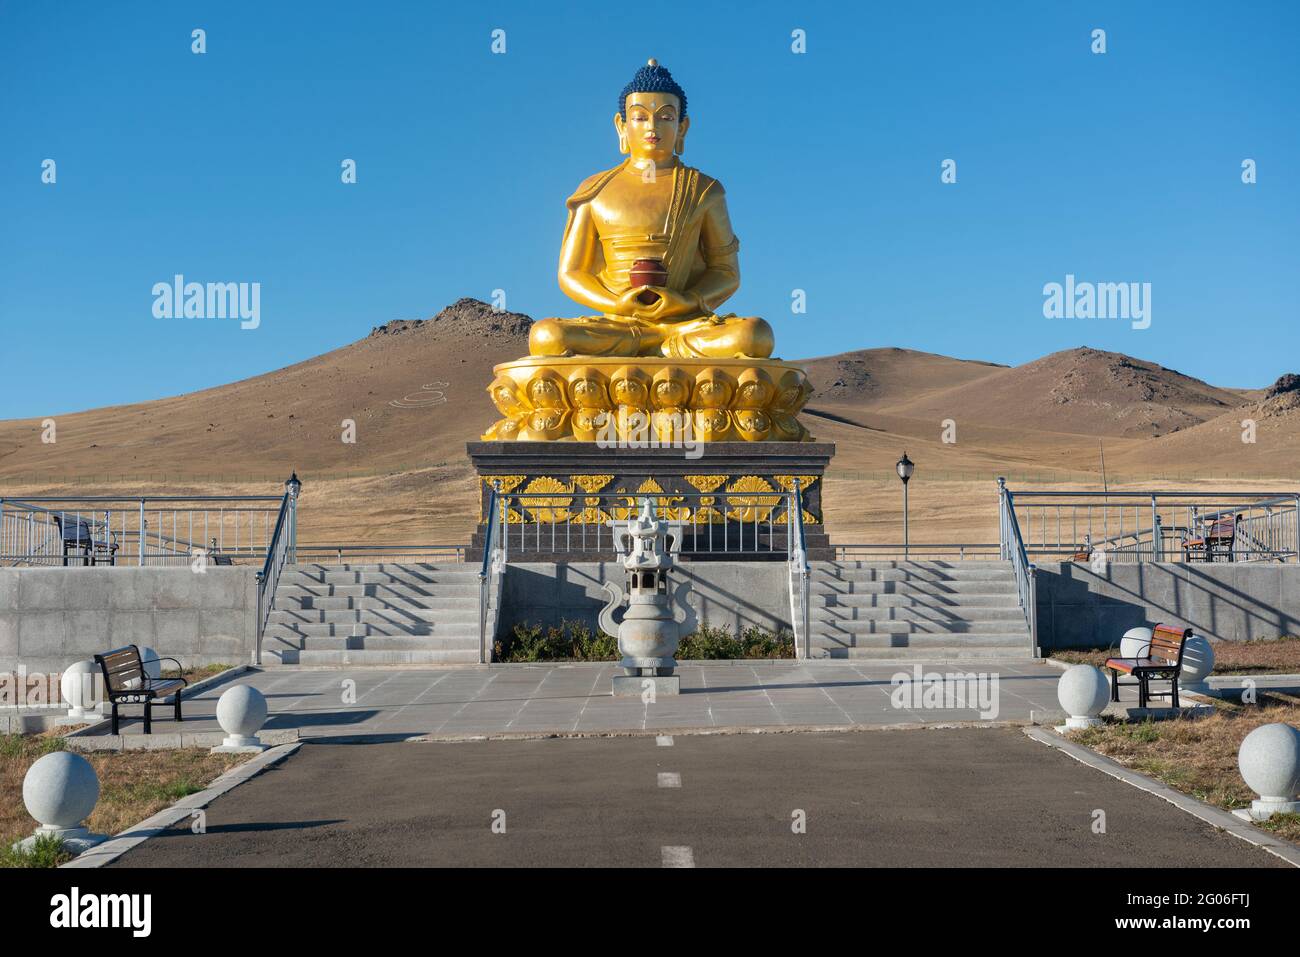 El gran Buda de oro tiene vistas al cementerio de Mongolia. También se puede ver en la estepa viajando por el Ferrocarril Transiberiano. Foto de stock